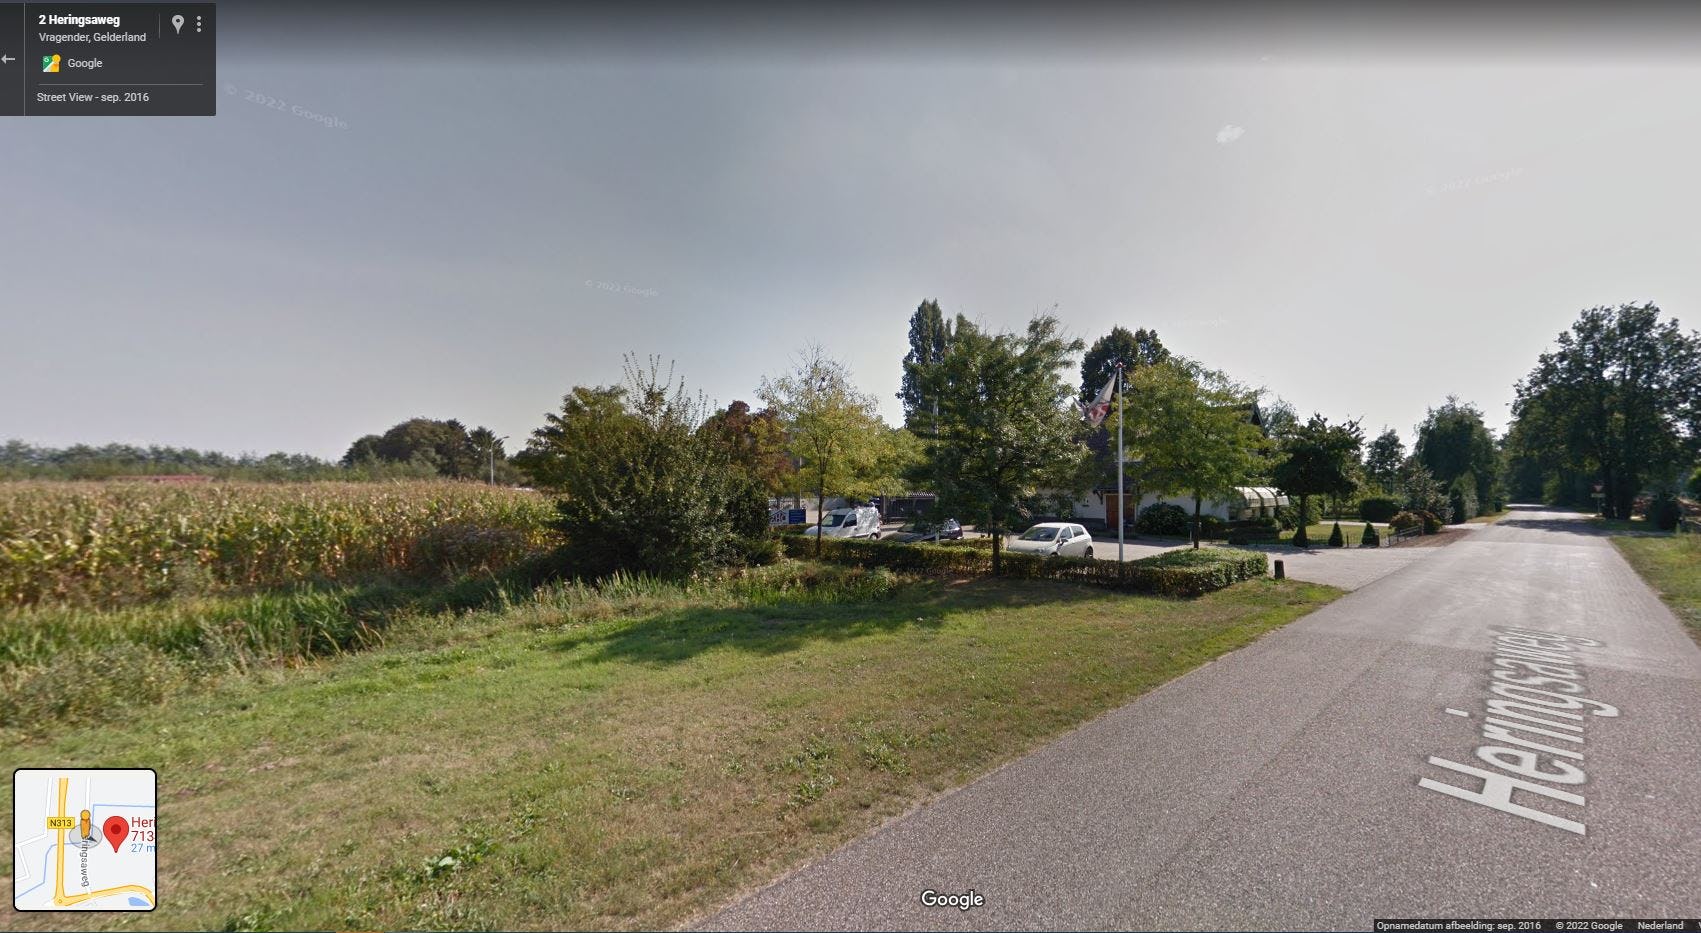 De beoogde locatie van Aldi in het buitengebied tussen Lichtenvoorde en het dorp Vragender. Foto: Google Streetview.